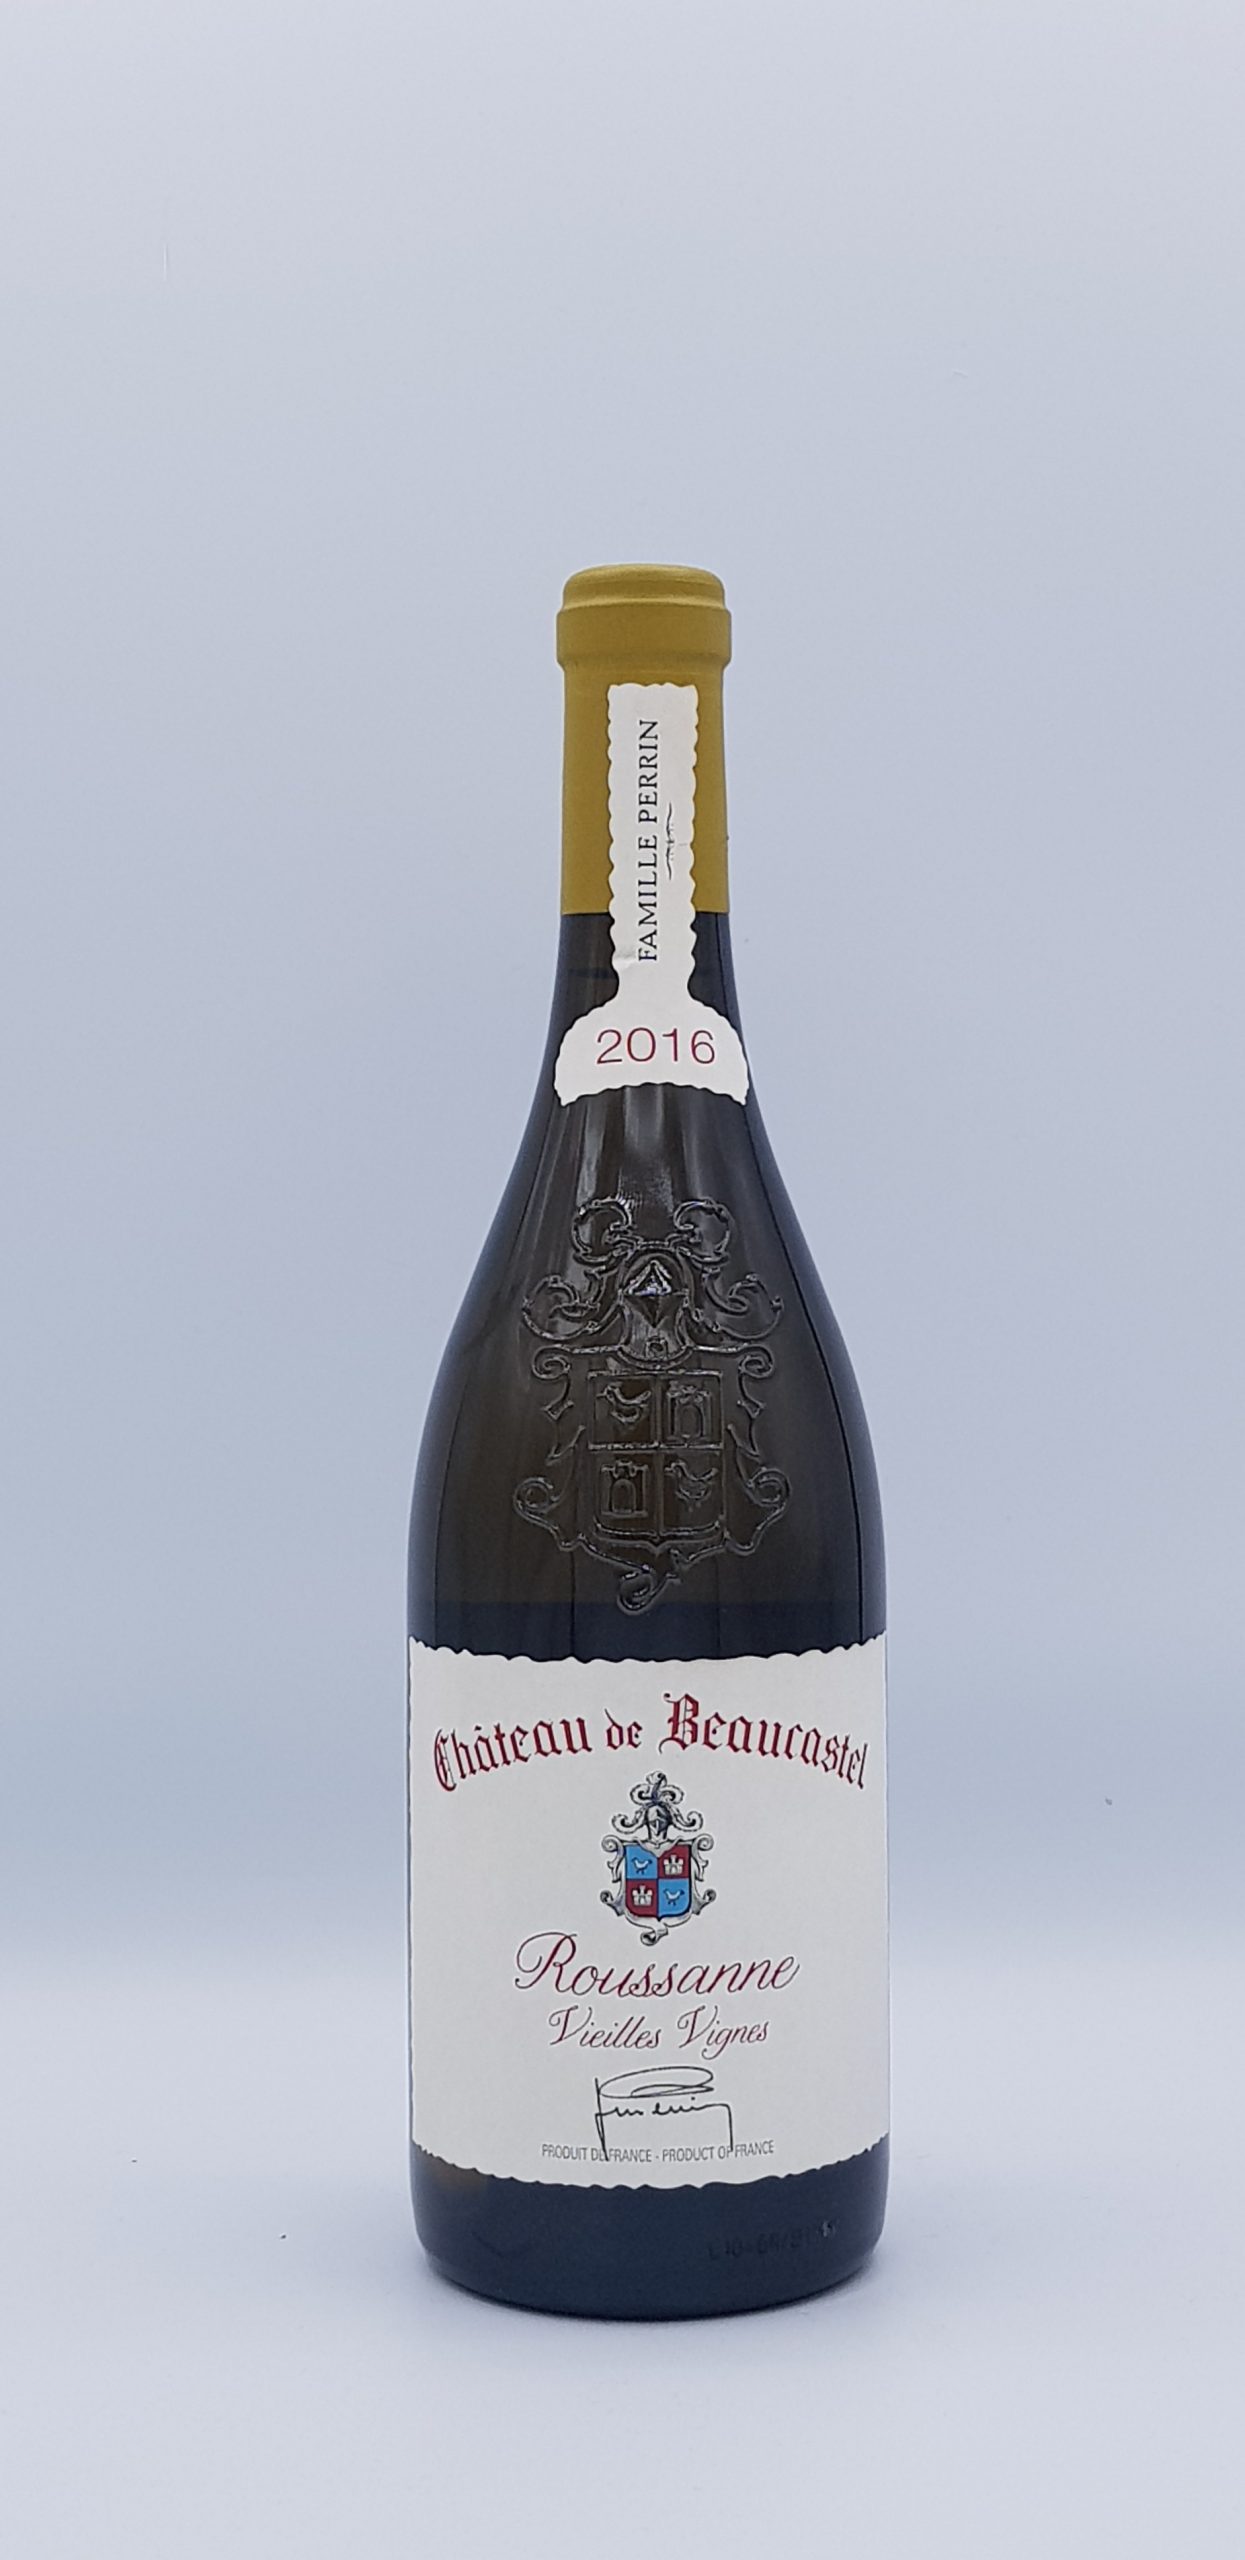 Chateauneuf Du Pape Vieilles Vignes “Roussane” 2016